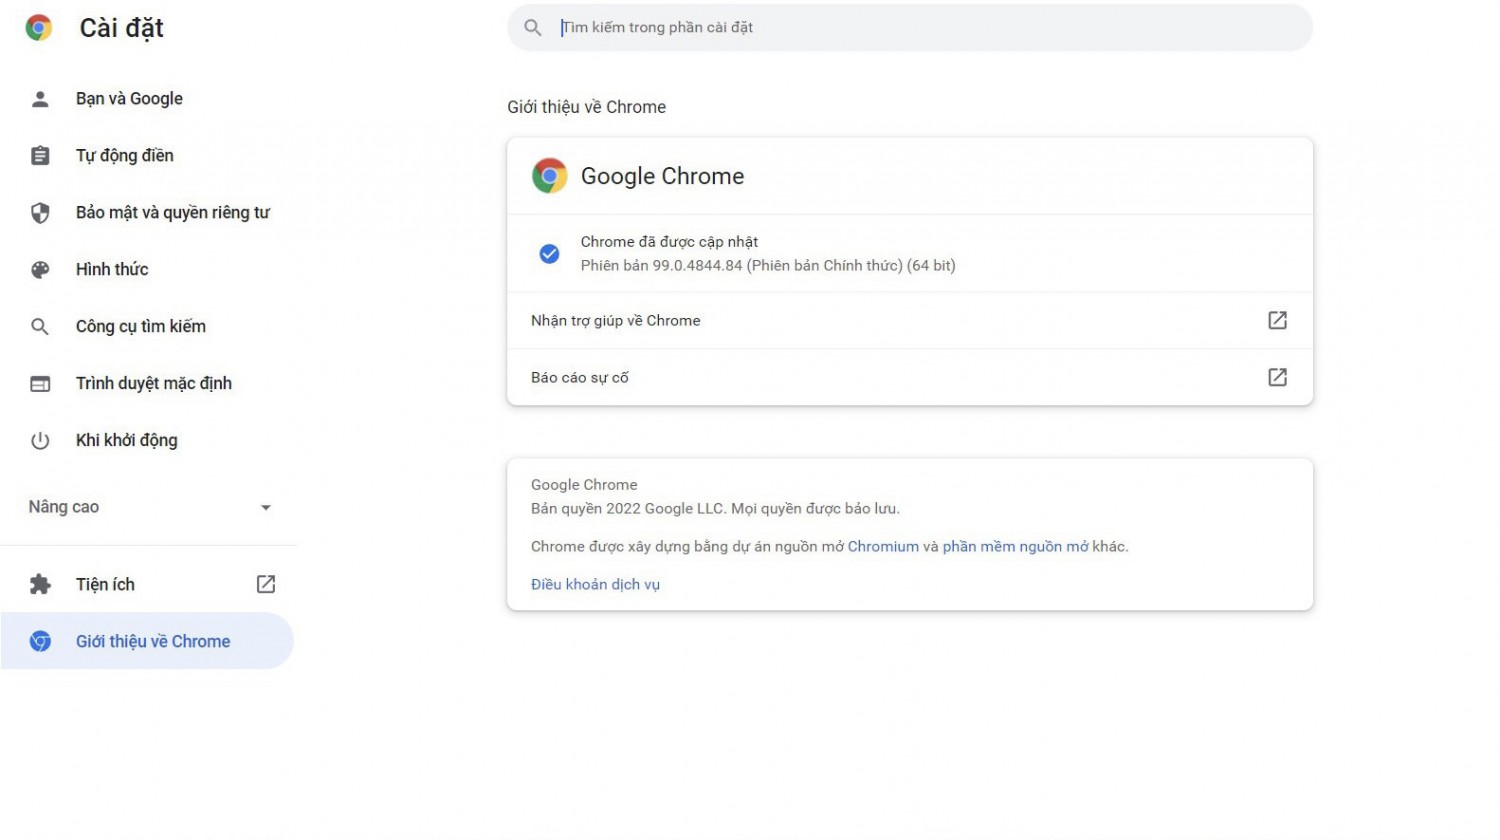 Google Chrome của bạn đã được update thành công